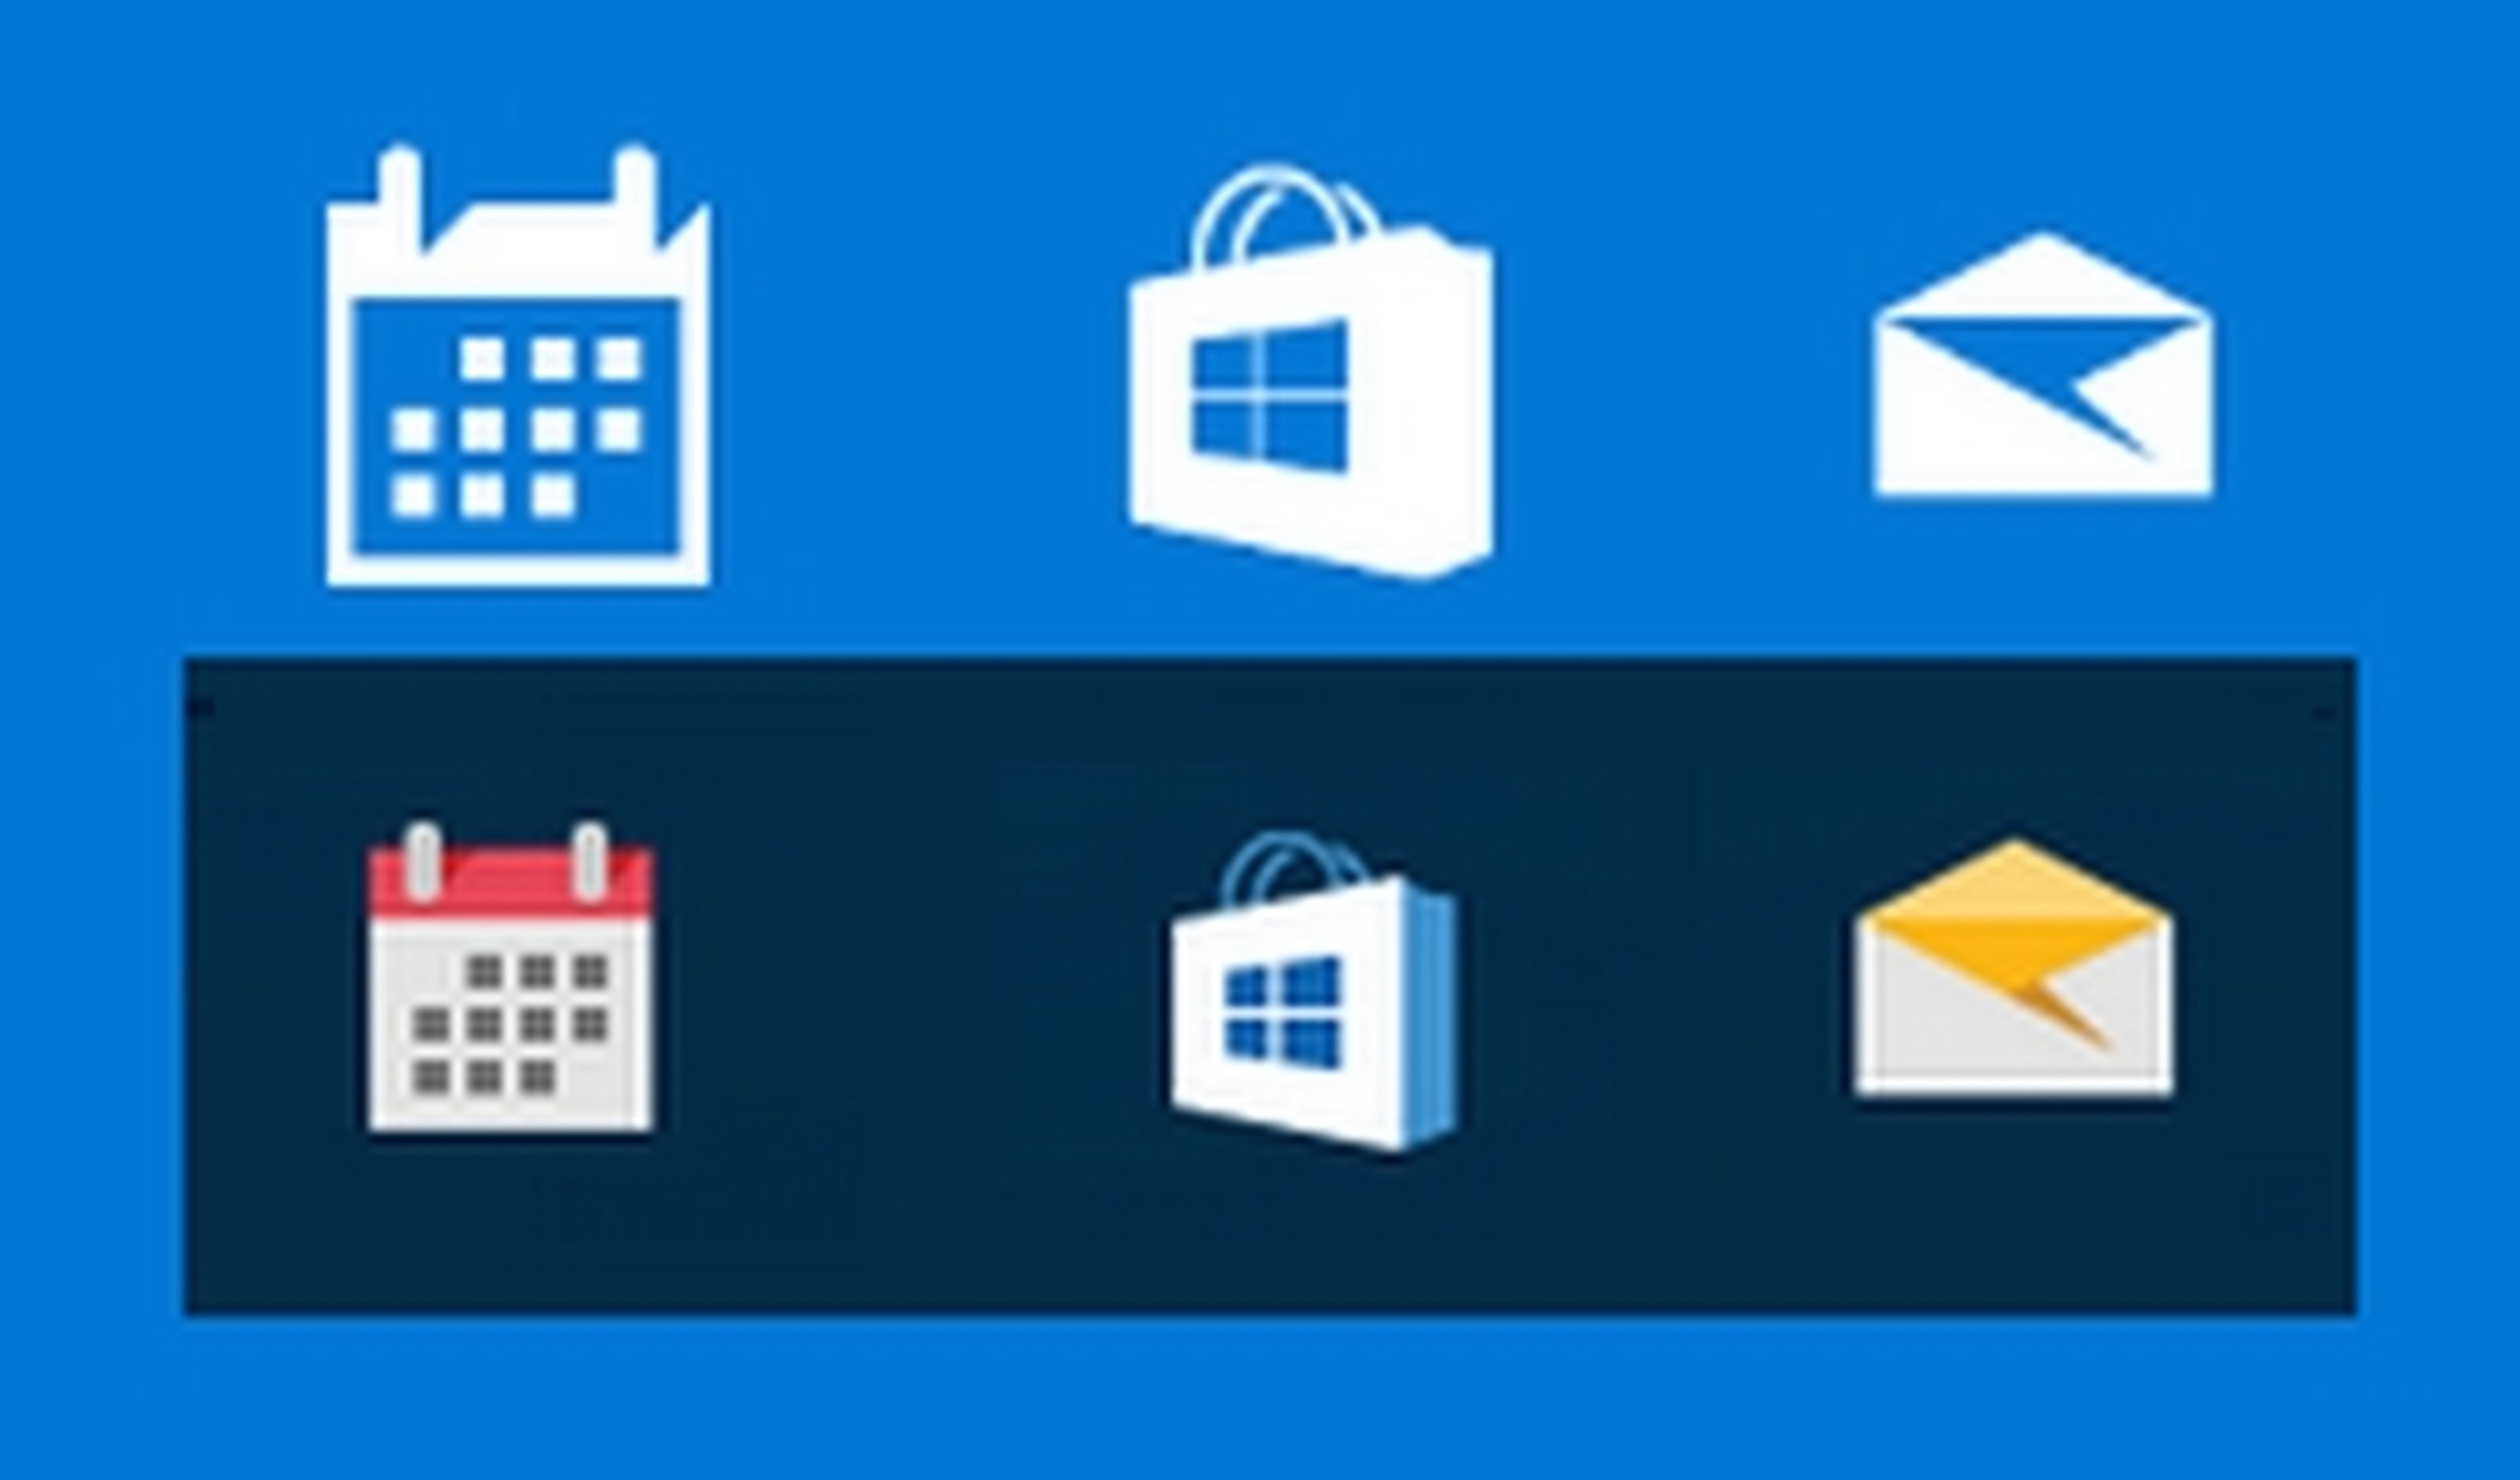 Windows 10 todas las novedades de su primera gran actualización